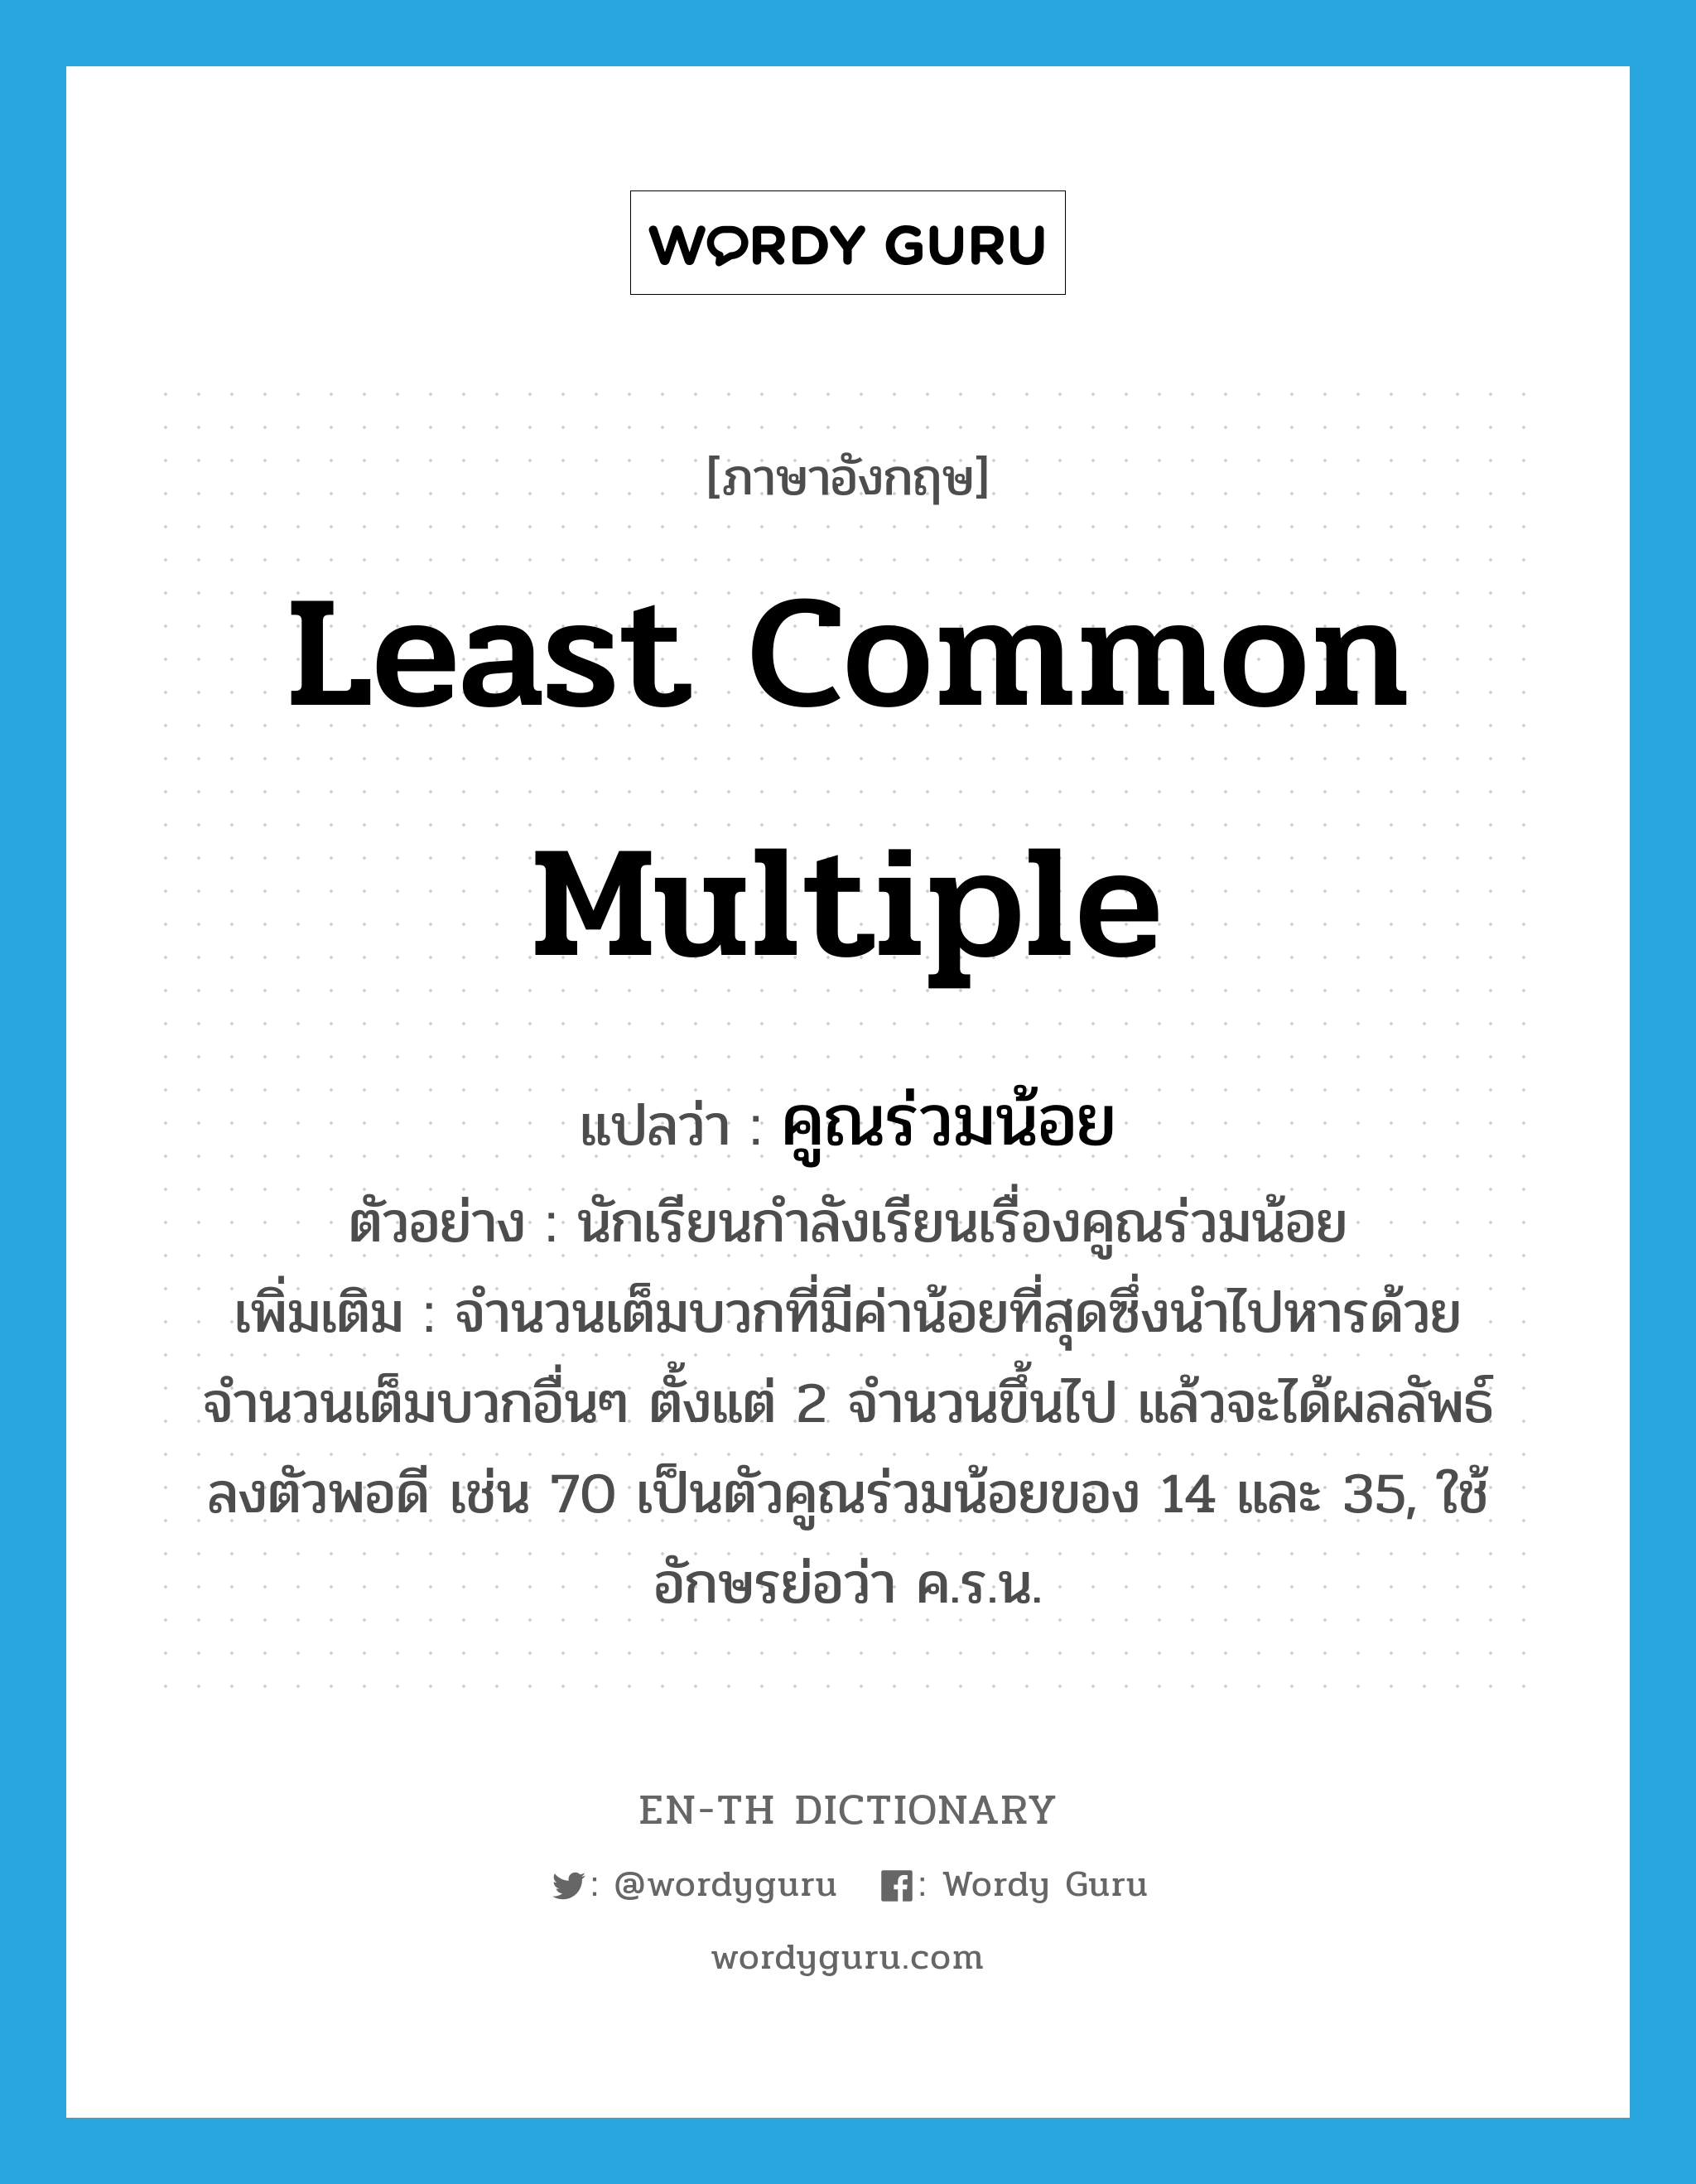 Least Common Multiple แปลว่า?, คำศัพท์ภาษาอังกฤษ least common multiple แปลว่า คูณร่วมน้อย ประเภท N ตัวอย่าง นักเรียนกำลังเรียนเรื่องคูณร่วมน้อย เพิ่มเติม จำนวนเต็มบวกที่มีค่าน้อยที่สุดซึ่งนำไปหารด้วยจำนวนเต็มบวกอื่นๆ ตั้งแต่ 2 จำนวนขึ้นไป แล้วจะได้ผลลัพธ์ลงตัวพอดี เช่น 70 เป็นตัวคูณร่วมน้อยของ 14 และ 35, ใช้อักษรย่อว่า ค.ร.น. หมวด N